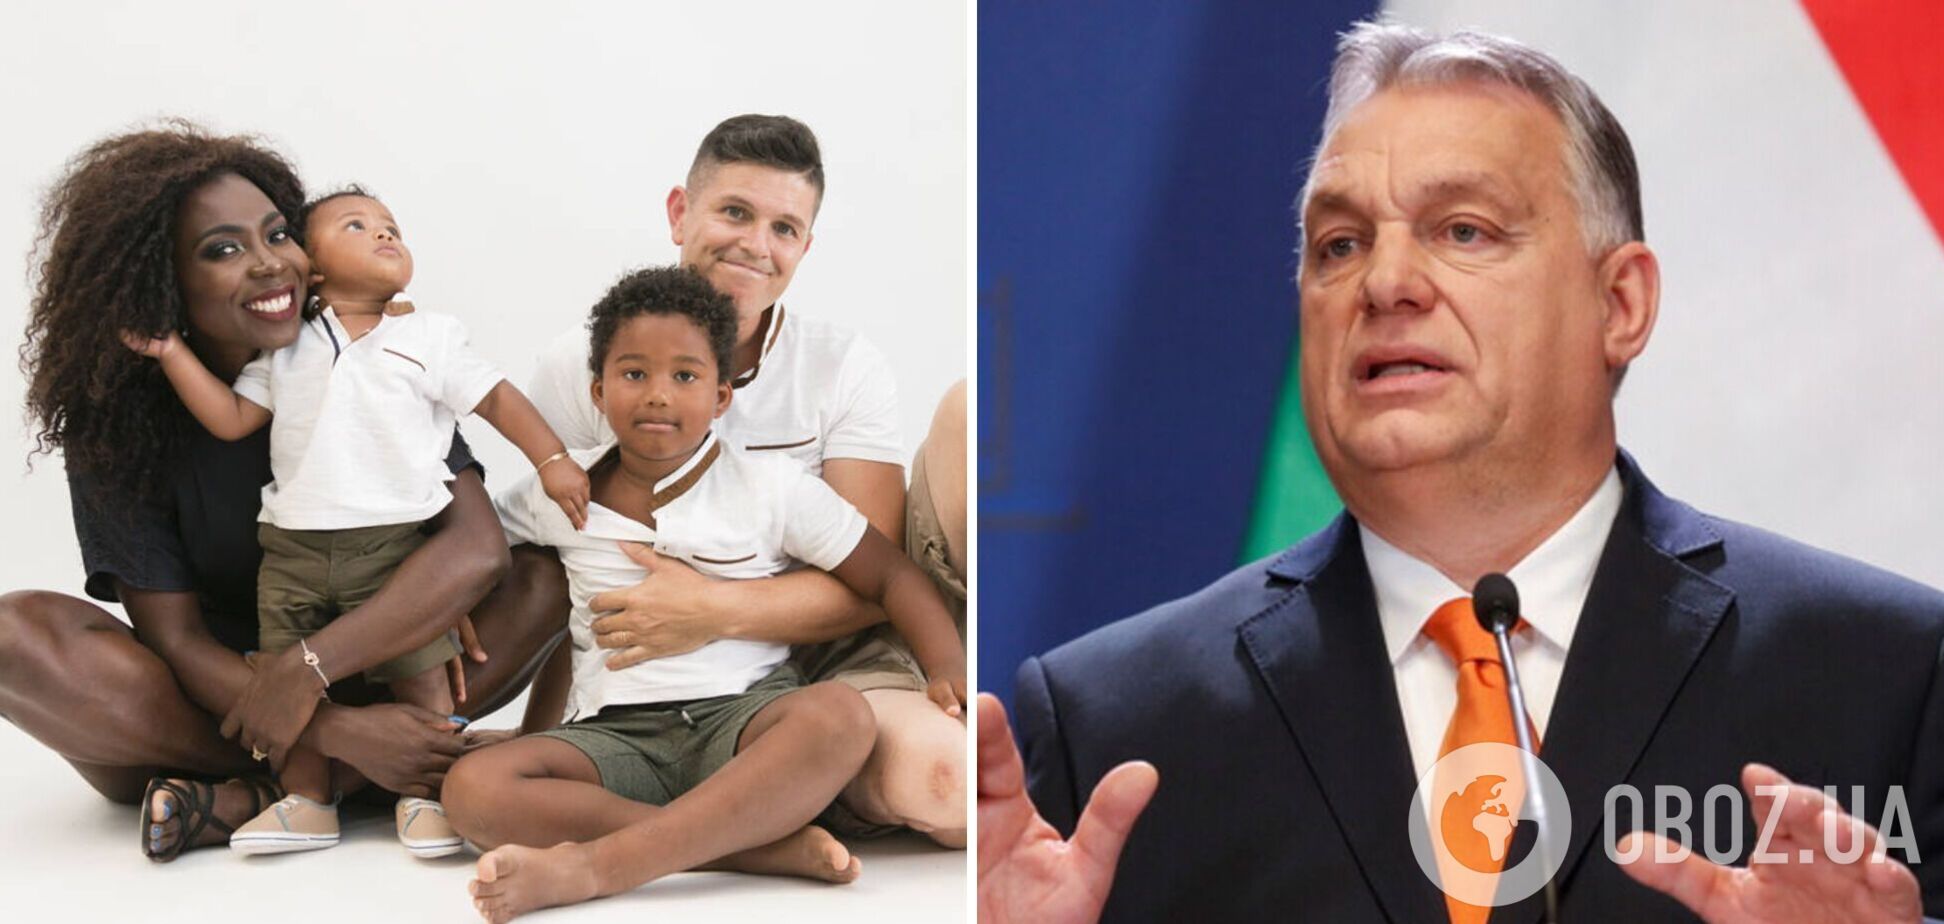 Орбан заявил, что против 'смешивания рас' в Венгрии, и упрекнул страны ЕС: разгорелся скандал